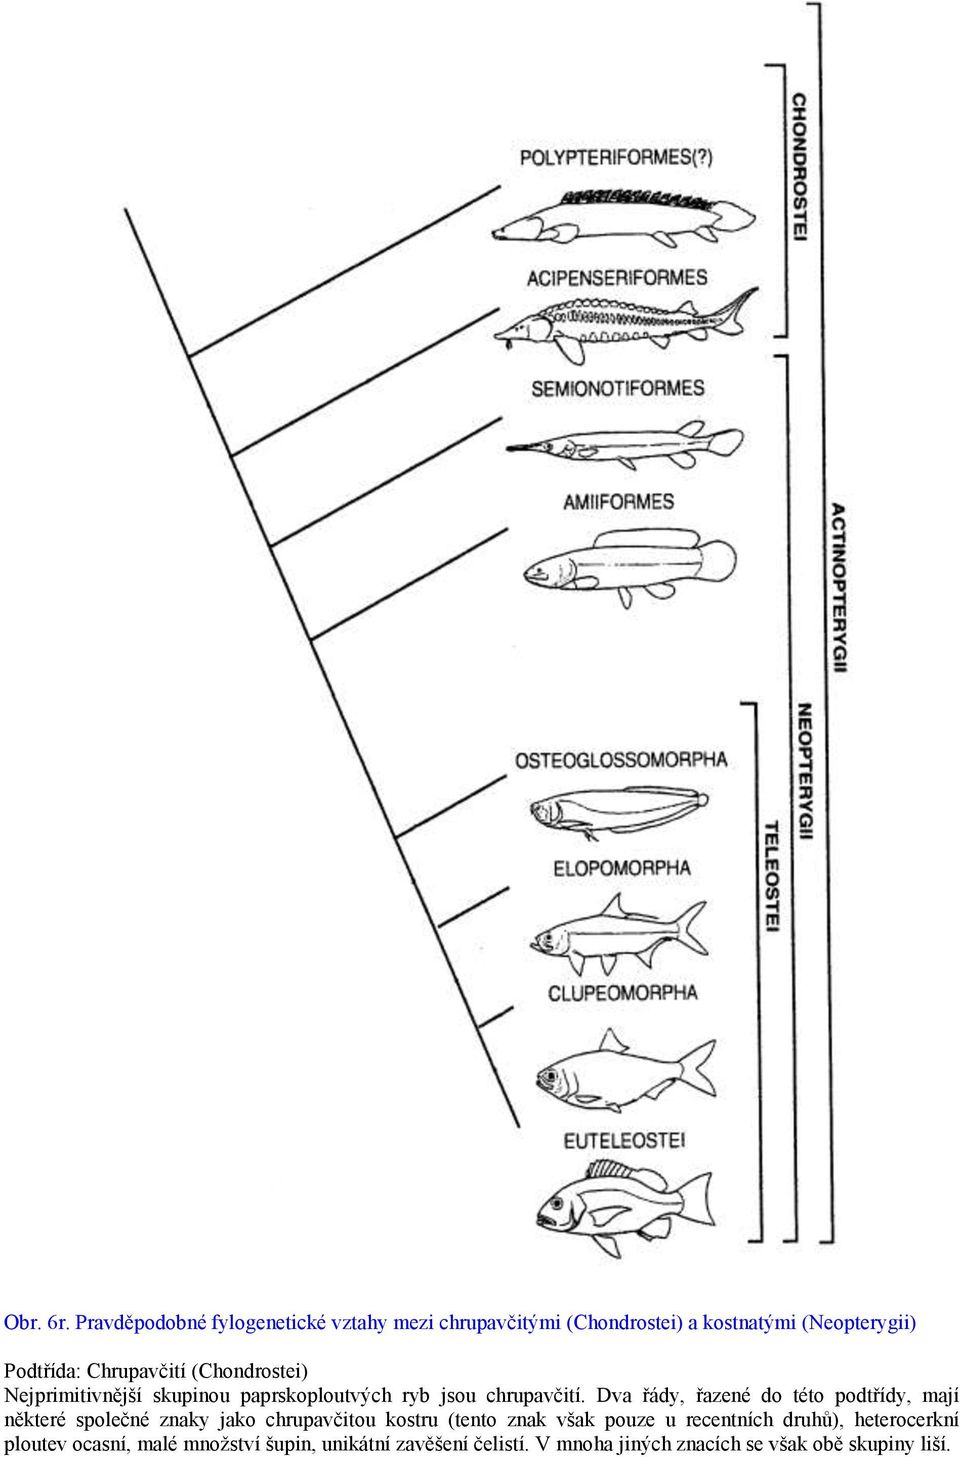 Chrupavčití (Chondrostei) Nejprimitivnější skupinou paprskoploutvých ryb jsou chrupavčití.